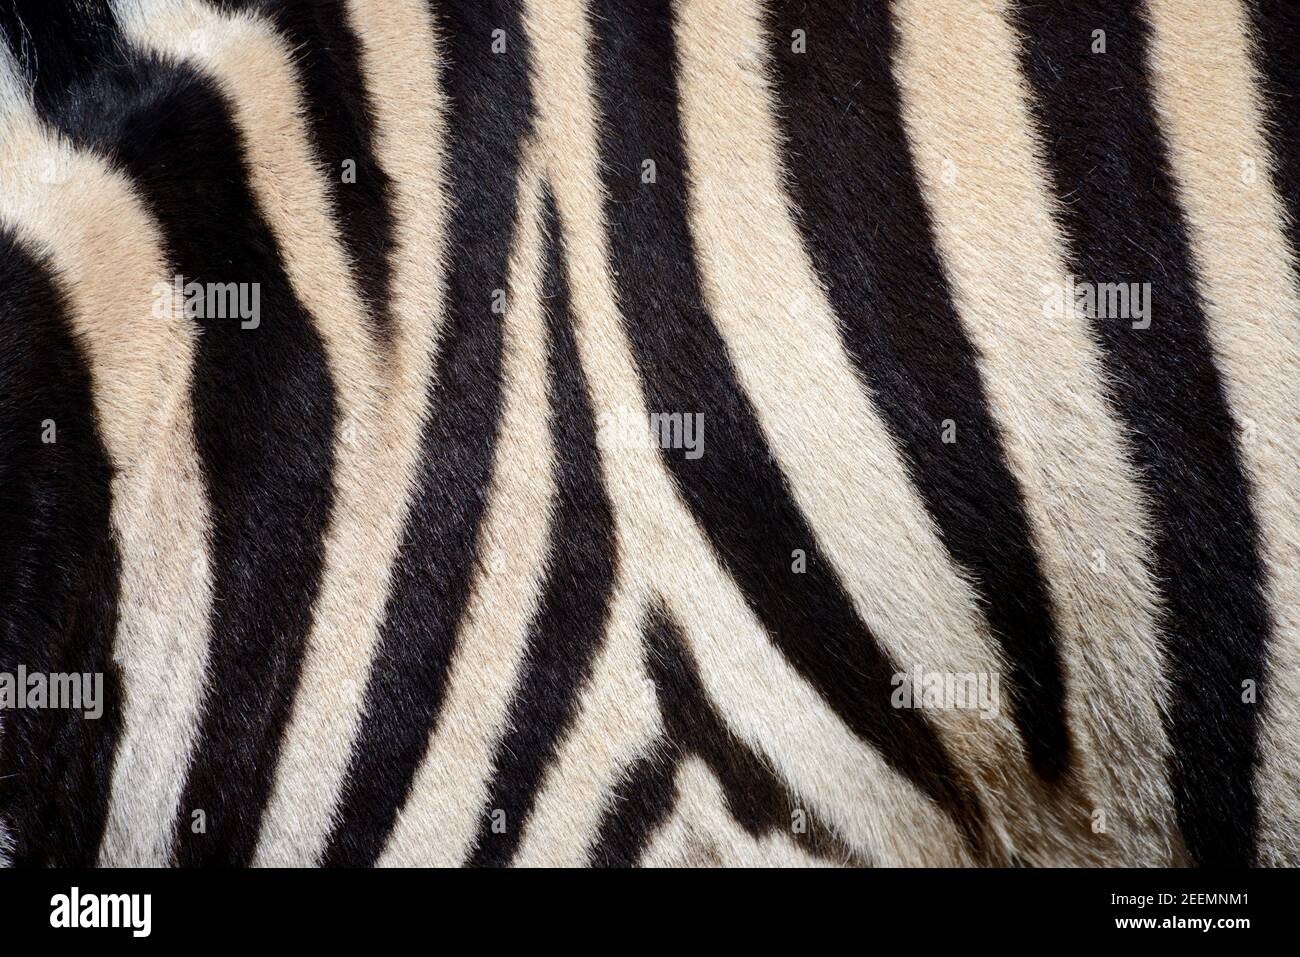 Schwarz-Weiß-Muster von Burchells Zebramantel, Pelz oder Haar Stockfoto